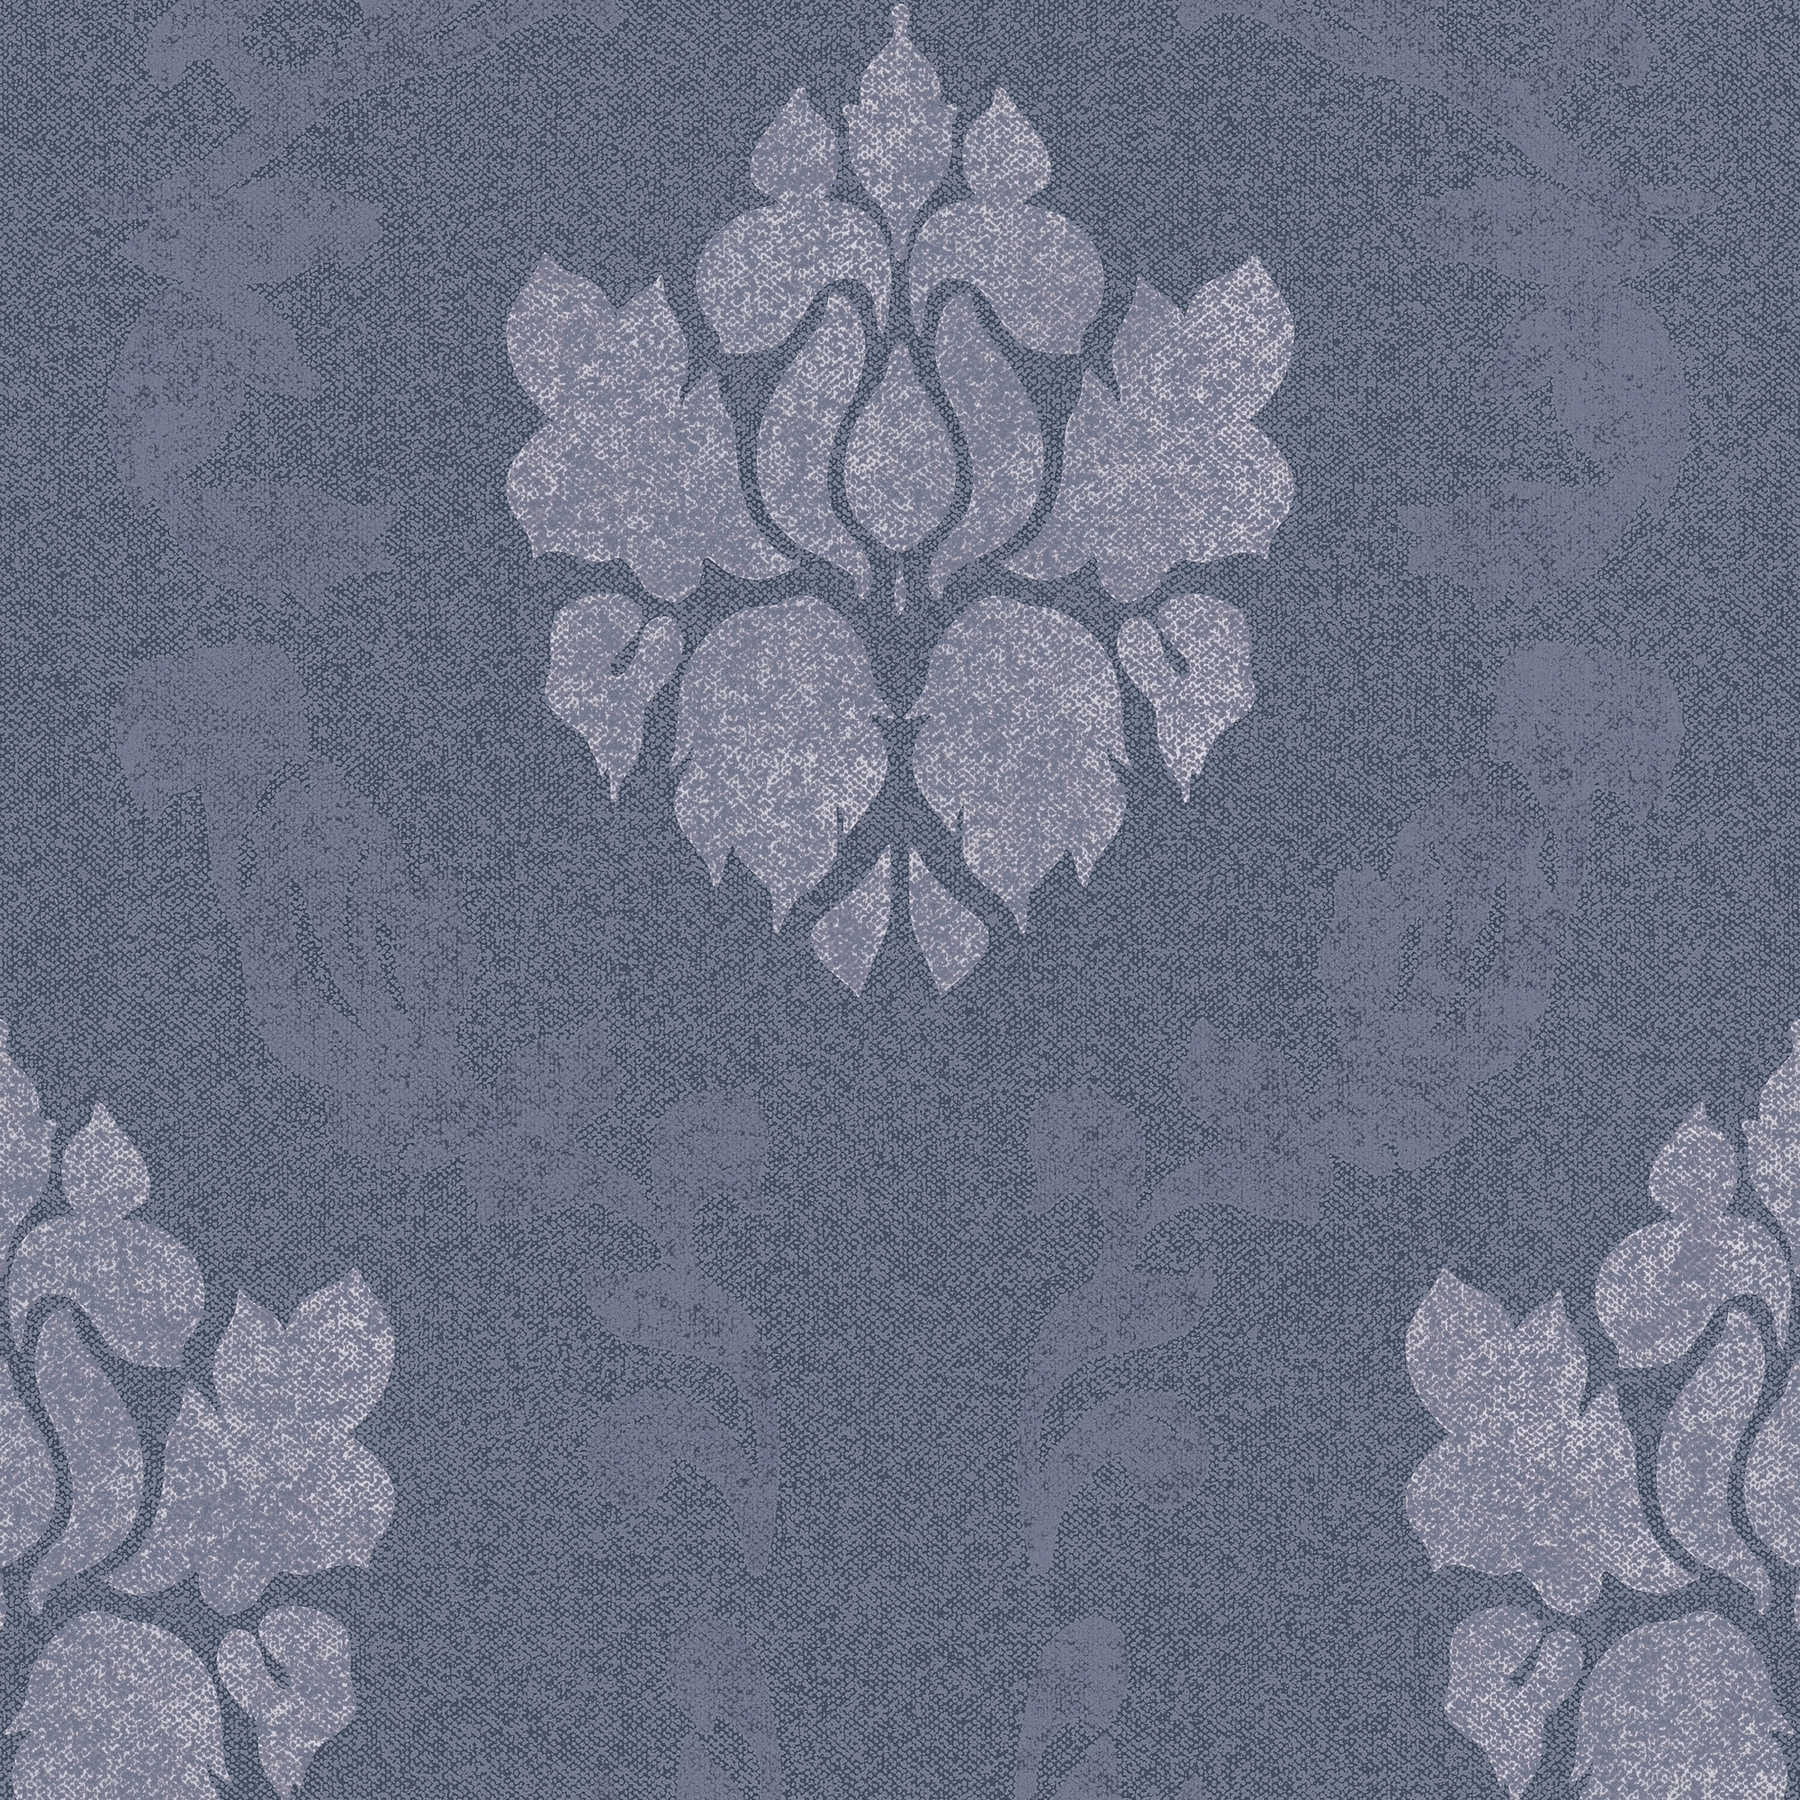             wallpaper ornament pattern in linen look - blue
        